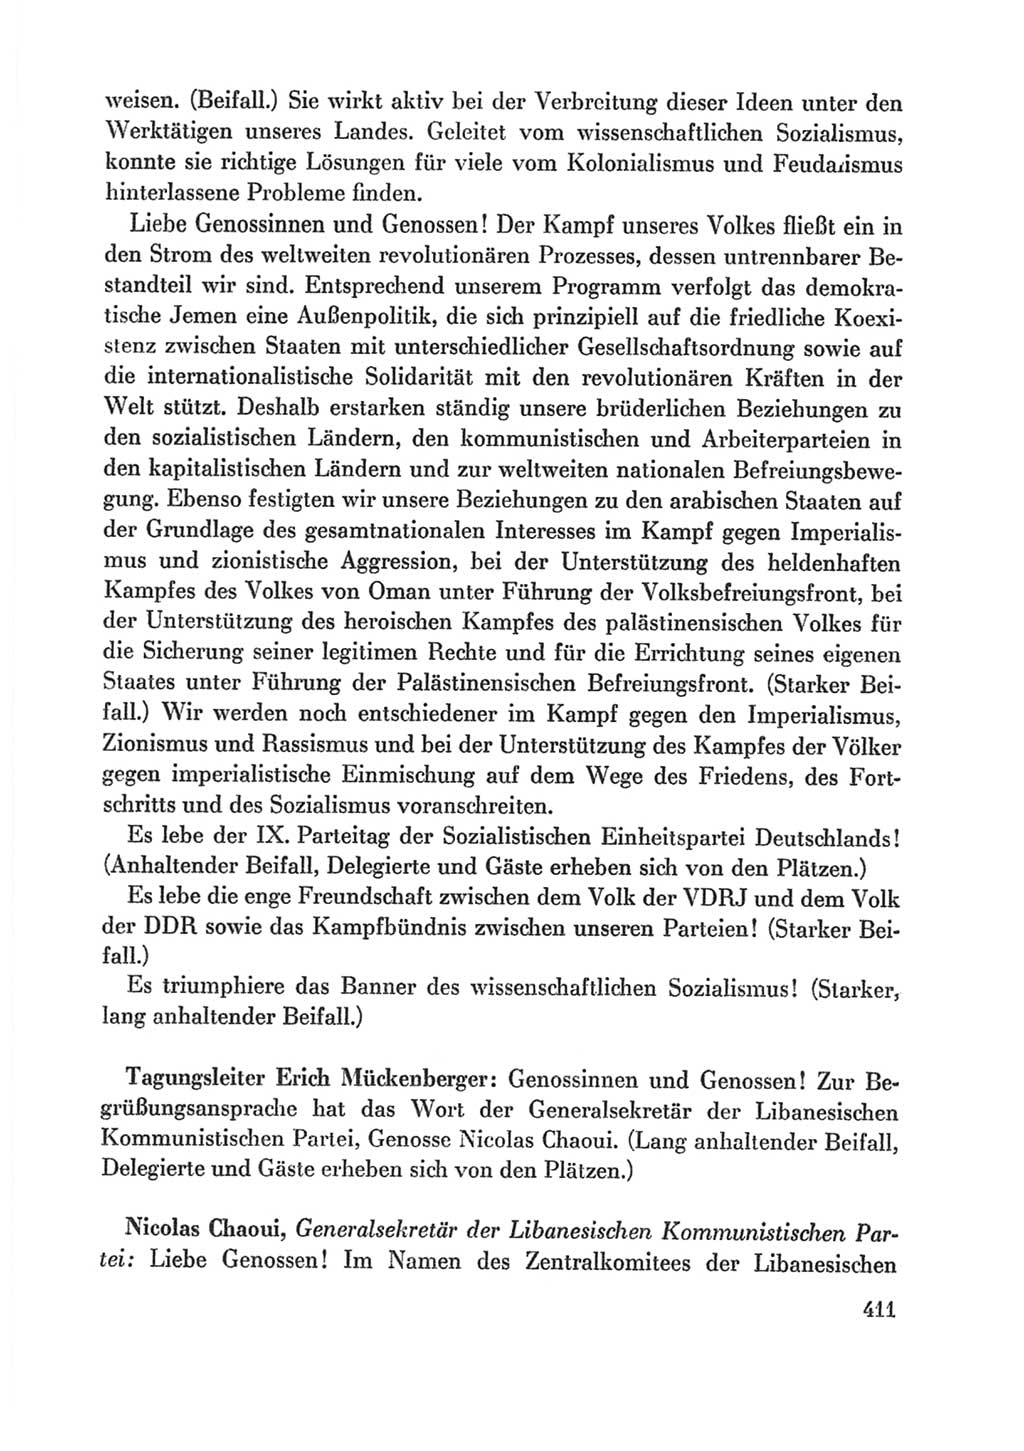 Protokoll der Verhandlungen des Ⅸ. Parteitages der Sozialistischen Einheitspartei Deutschlands (SED) [Deutsche Demokratische Republik (DDR)] 1976, Band 1, Seite 411 (Prot. Verh. Ⅸ. PT SED DDR 1976, Bd. 1, S. 411)